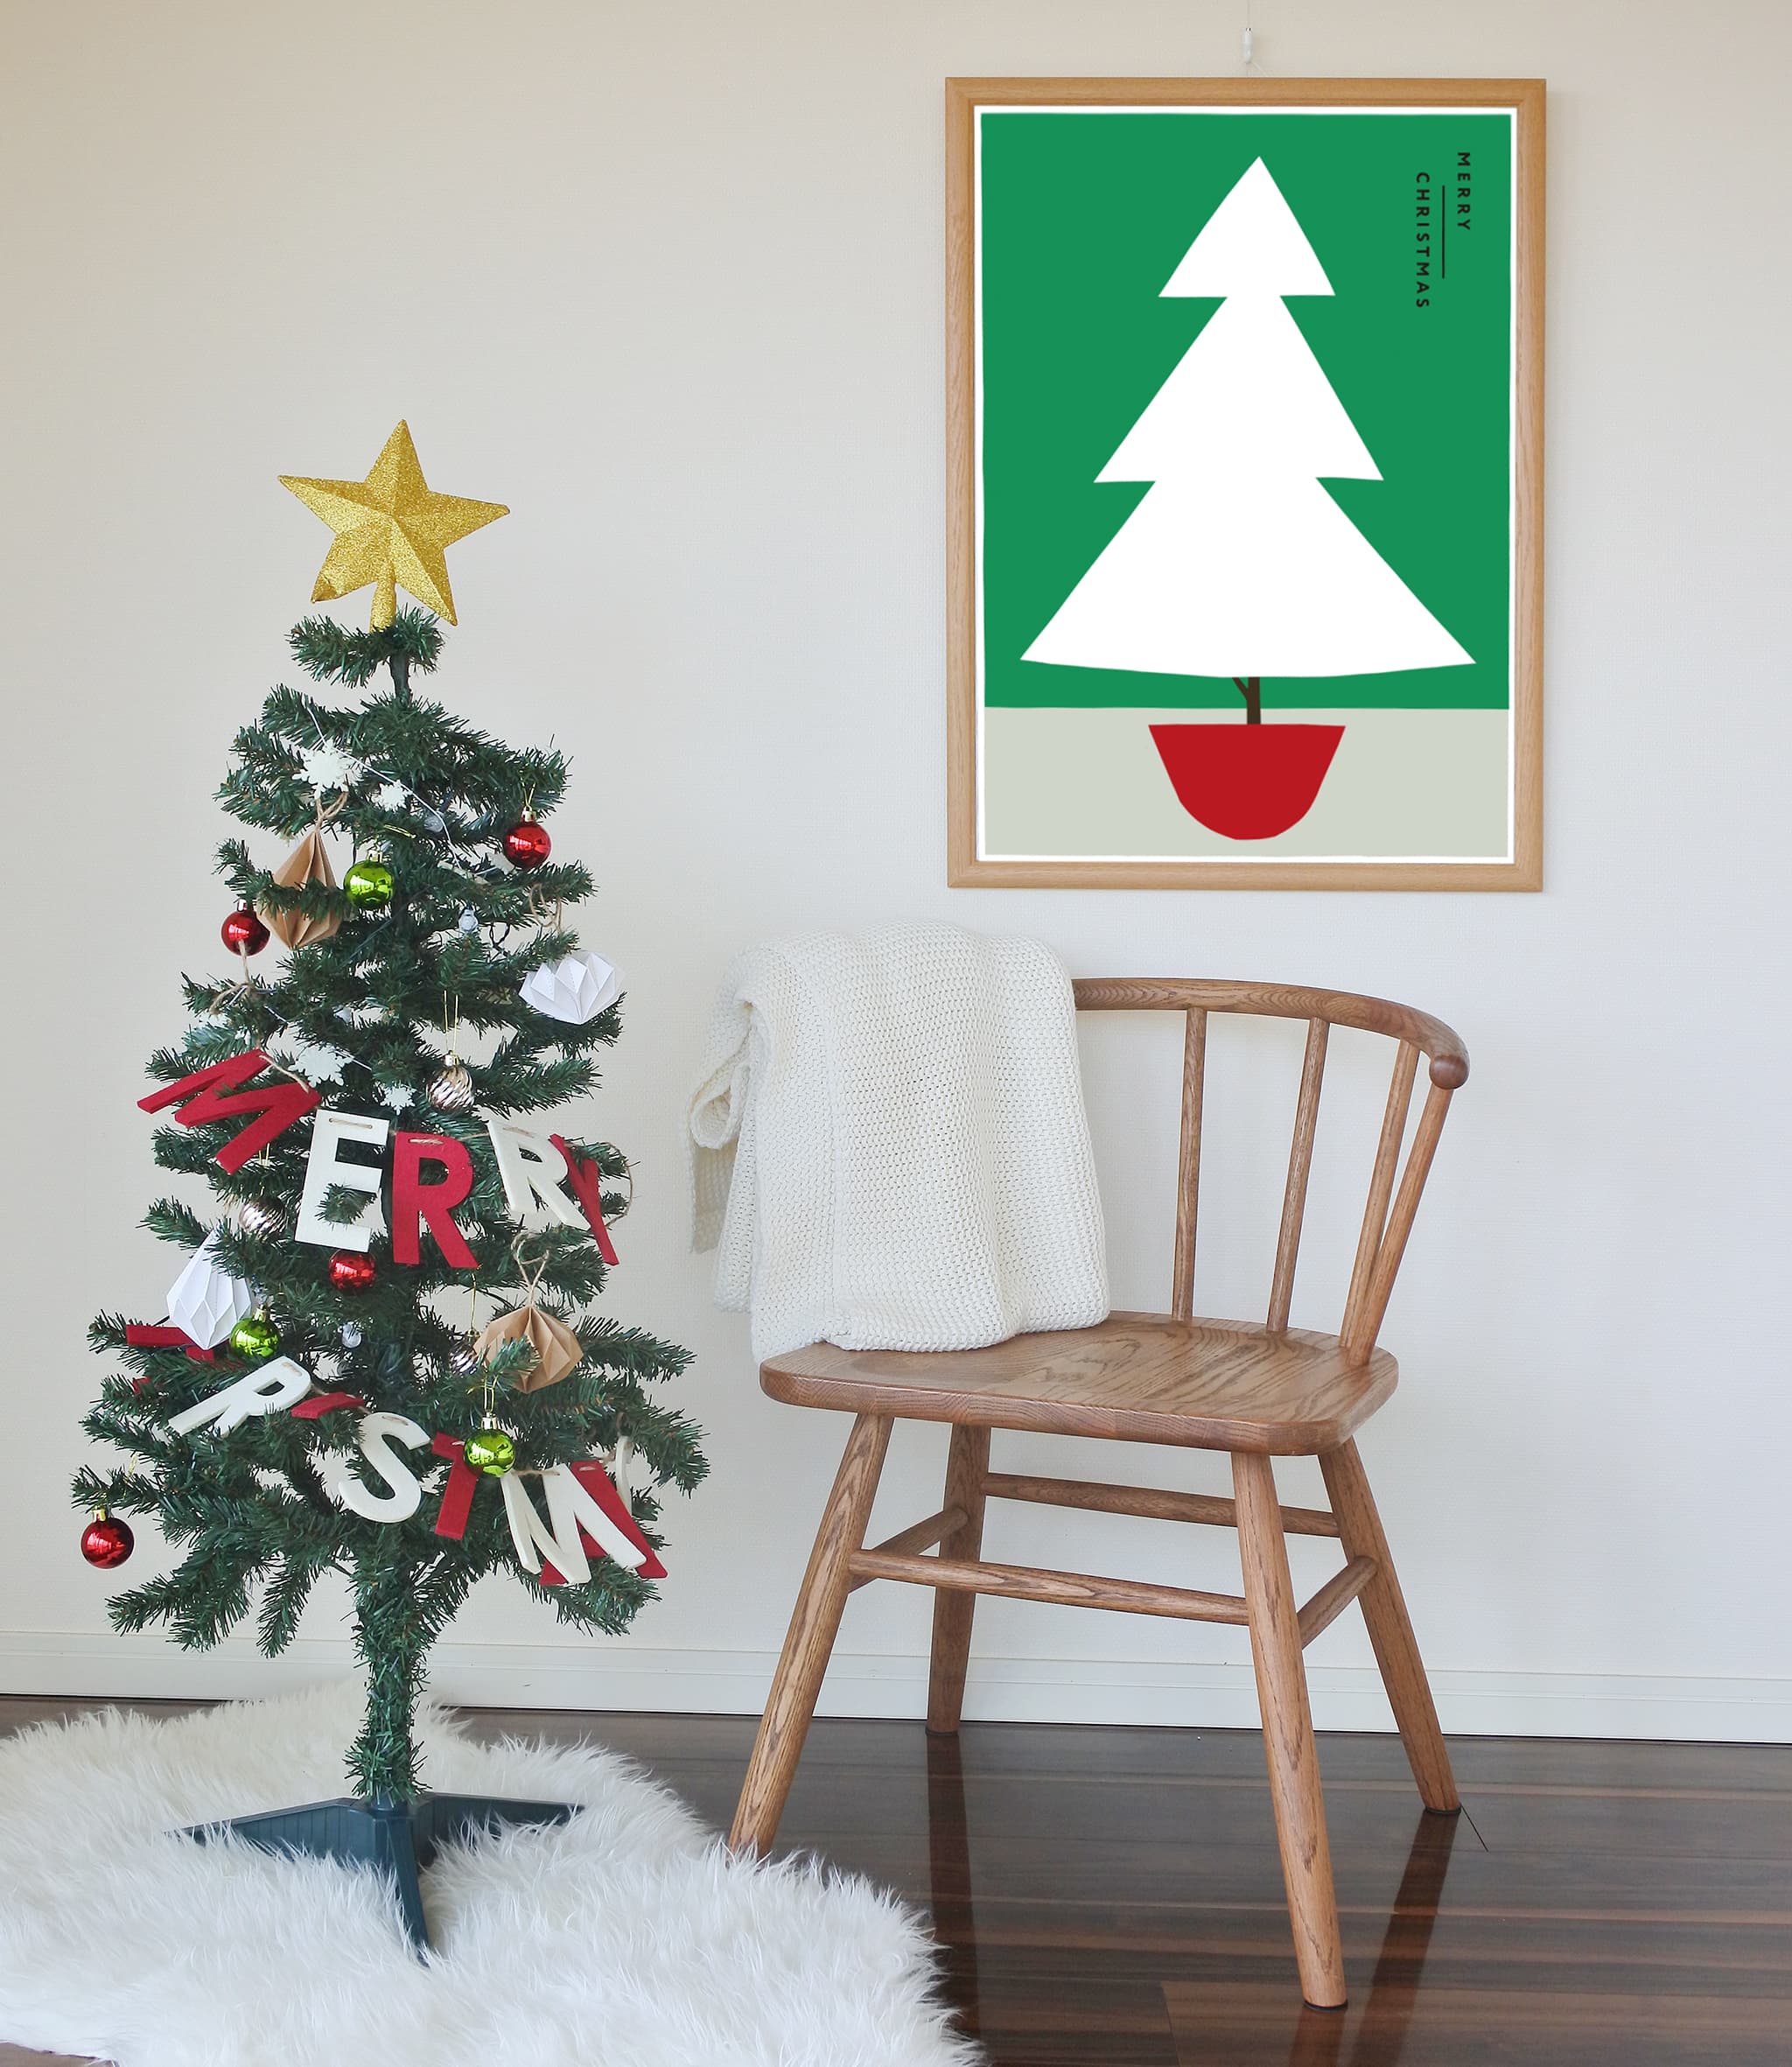 クリスマスのおうちをおしゃれにするインテリアポスター「家族ツリー」がオススメ